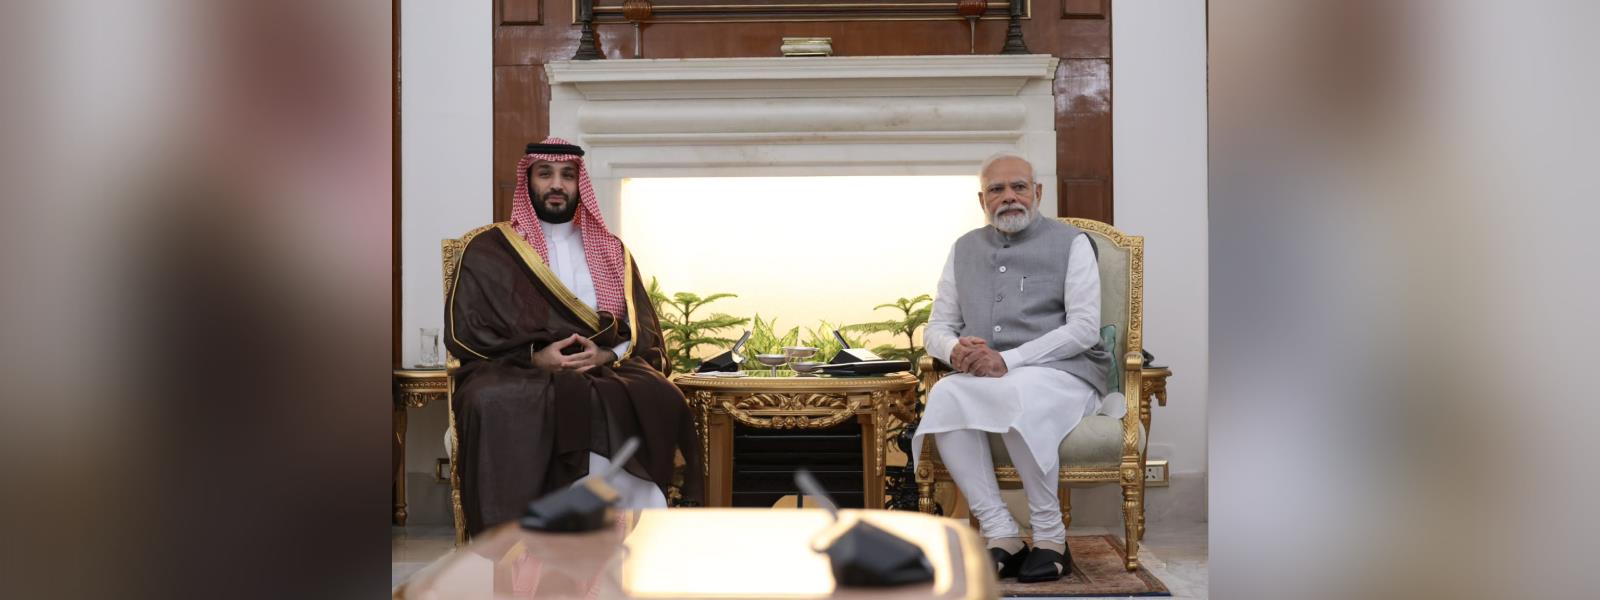 Prime Minister Shri Narendra Modi held bilateral talks with Crown Prince &amp; Prime Minister of the Kingdom of Saudi Arabia, HRH Mohammed bin Salman bin Abdulaziz Al Saud at Hyderabad House